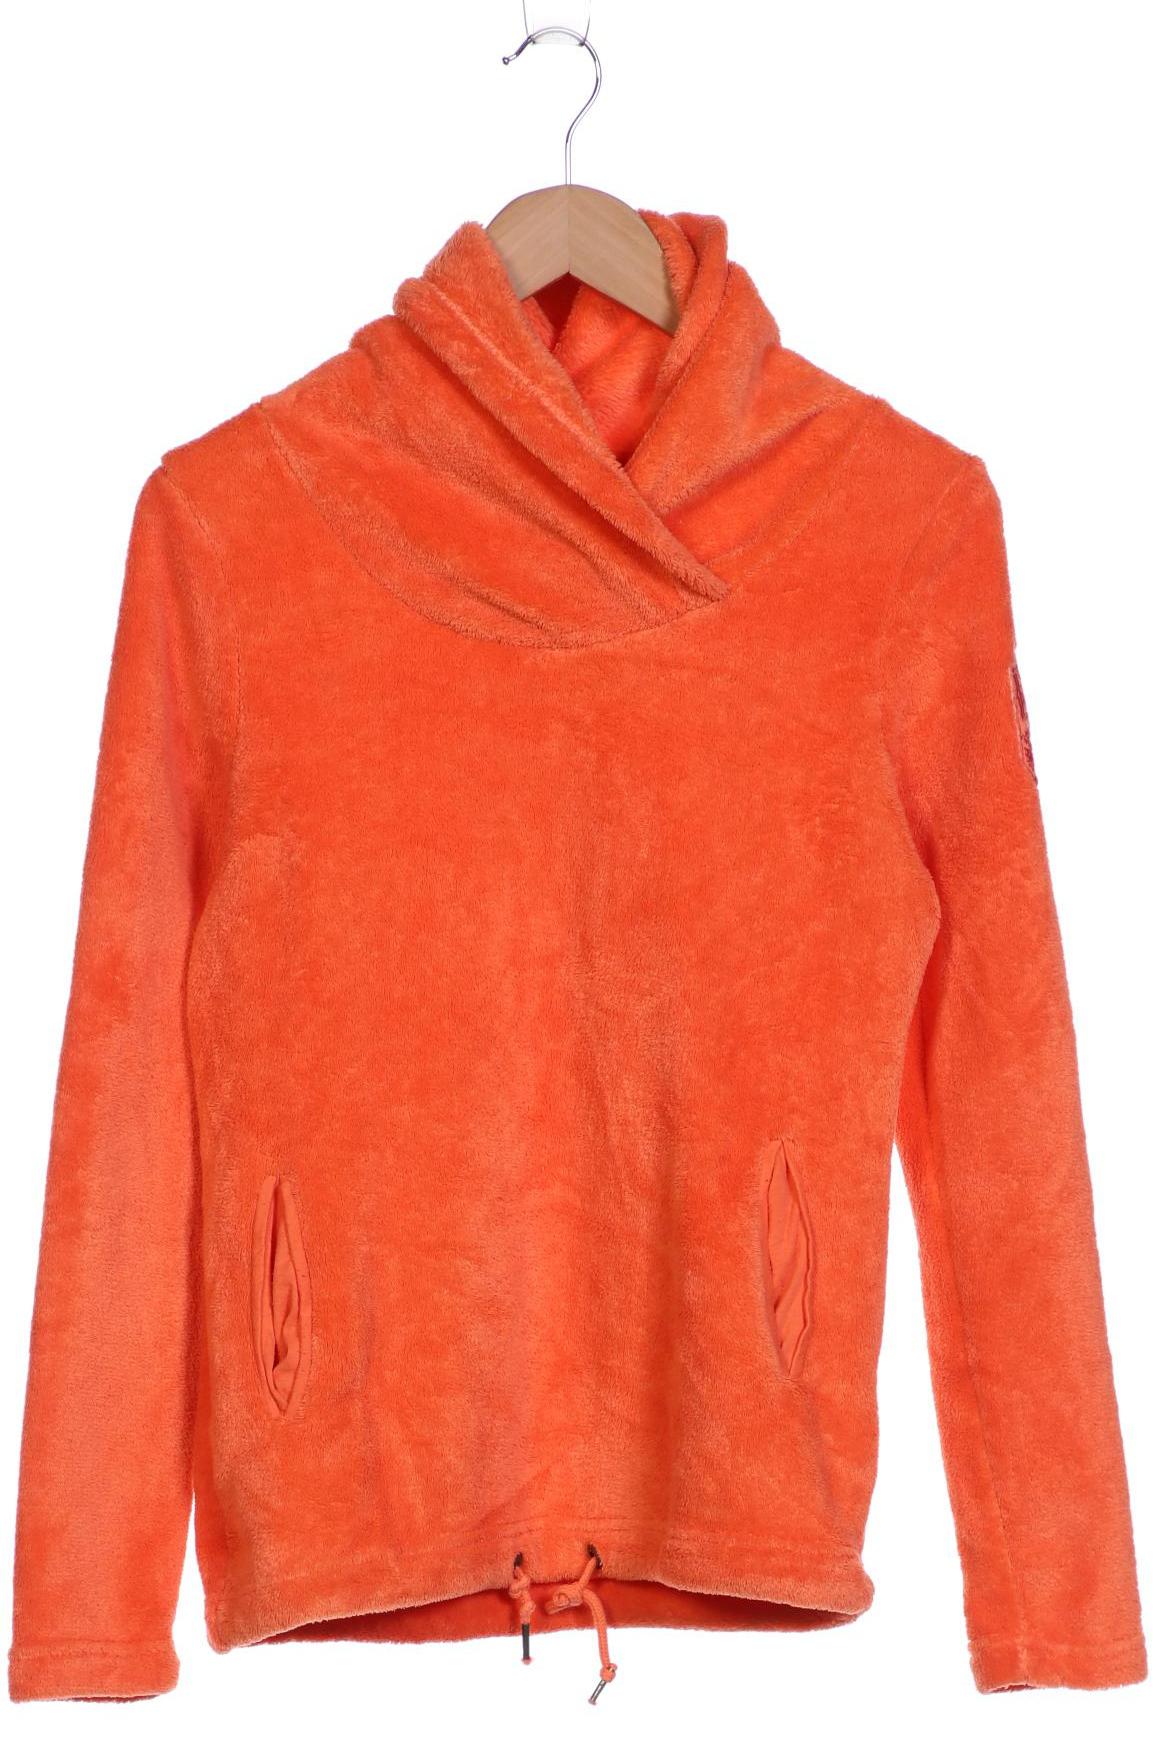 SOCCX Damen Sweatshirt, orange von SOCCX